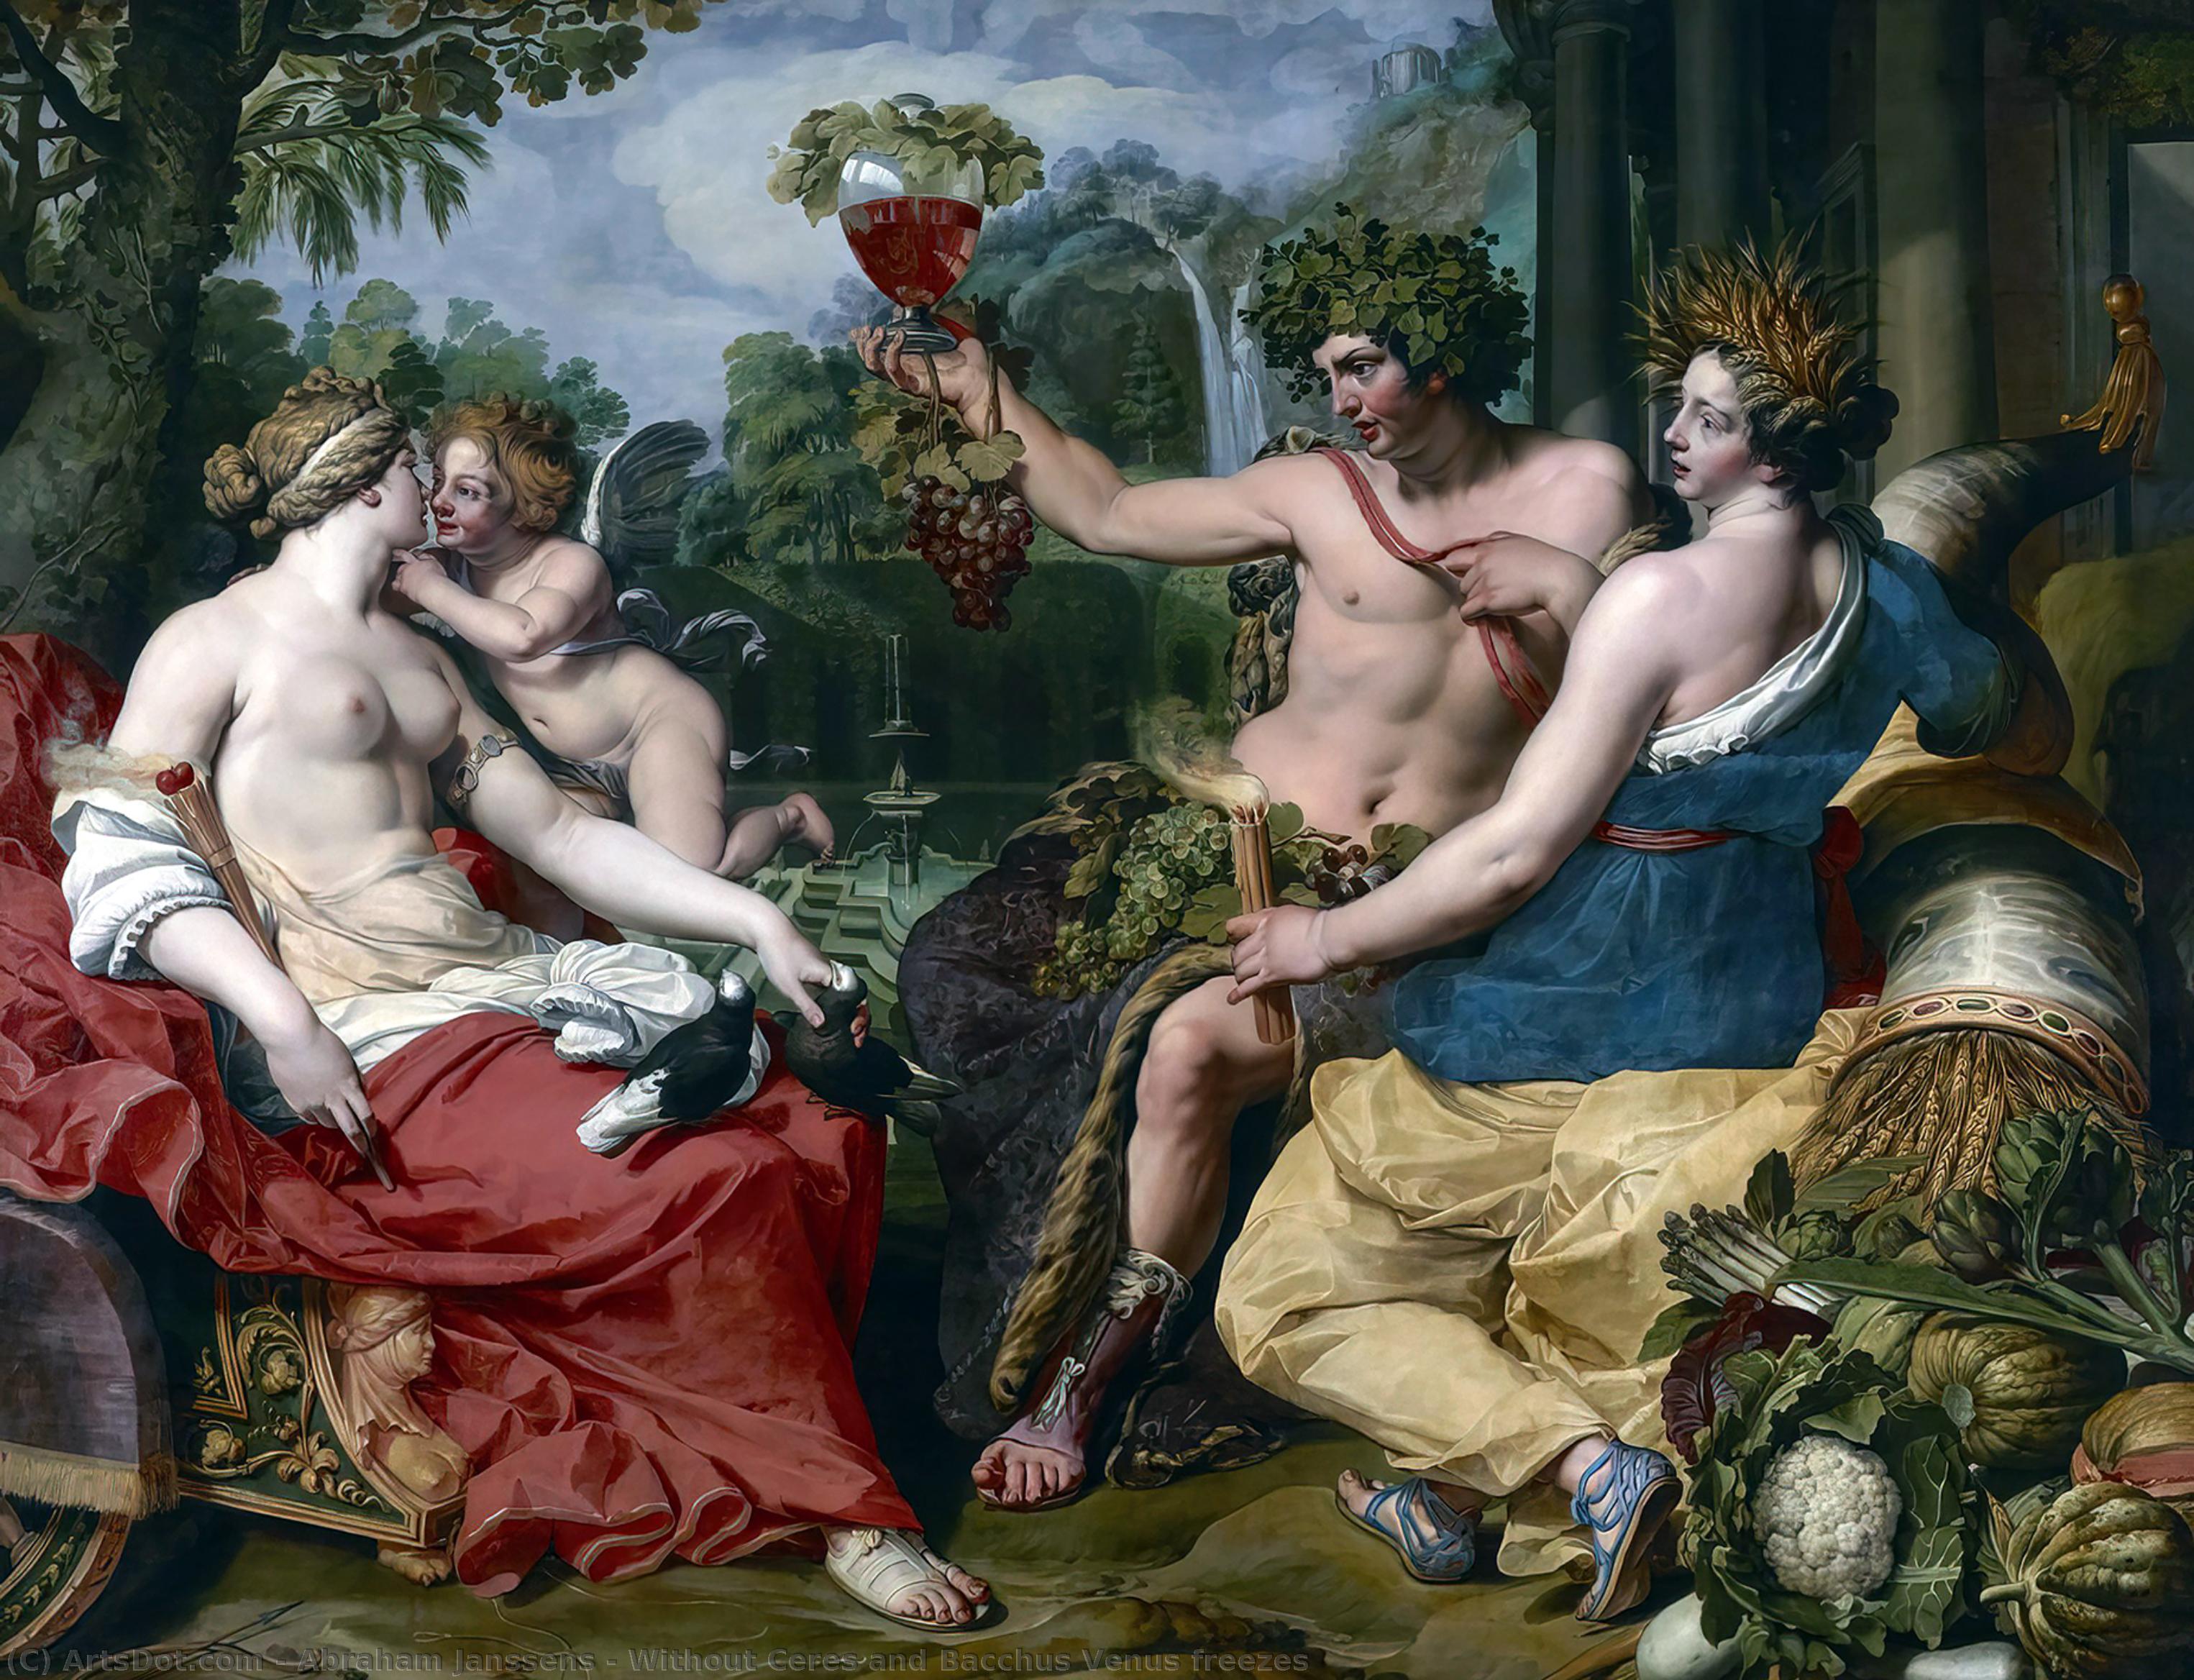 Wikioo.org – La Enciclopedia de las Bellas Artes - Pintura, Obras de arte de Abraham Janssens - sin ceres asícomo  Baco  Venus  se congela